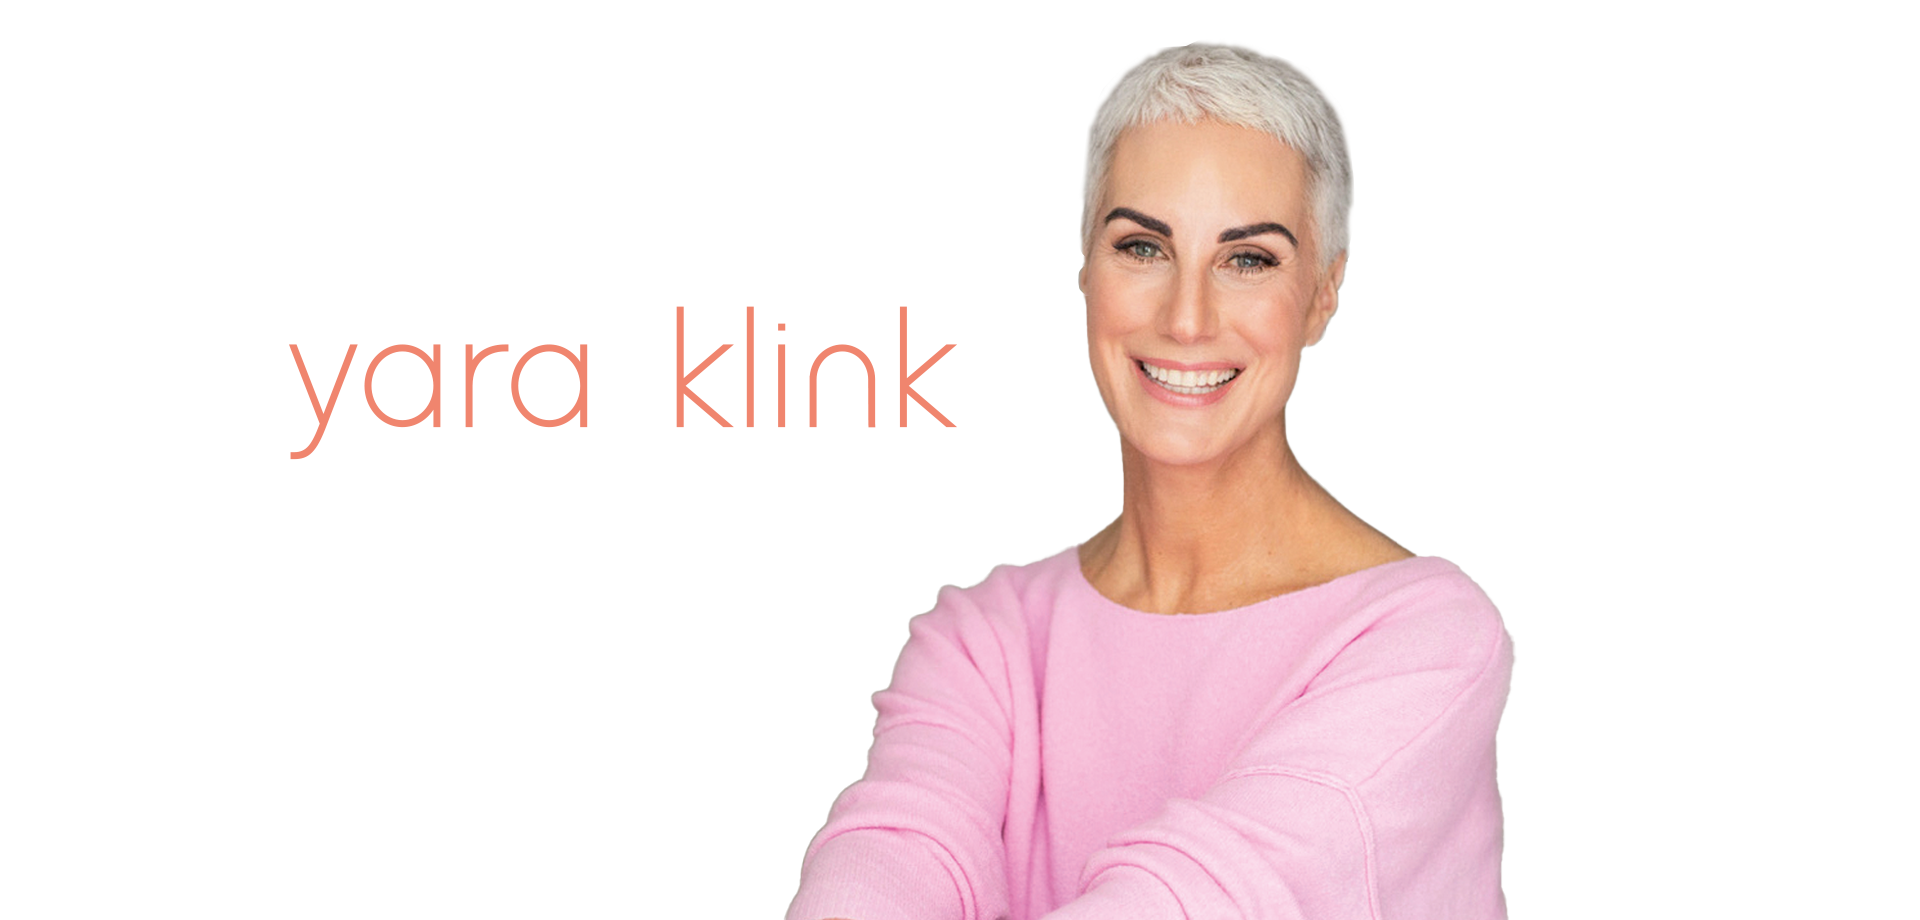 Yara Klink ist Pilatestrainerin und Yogalehrerin